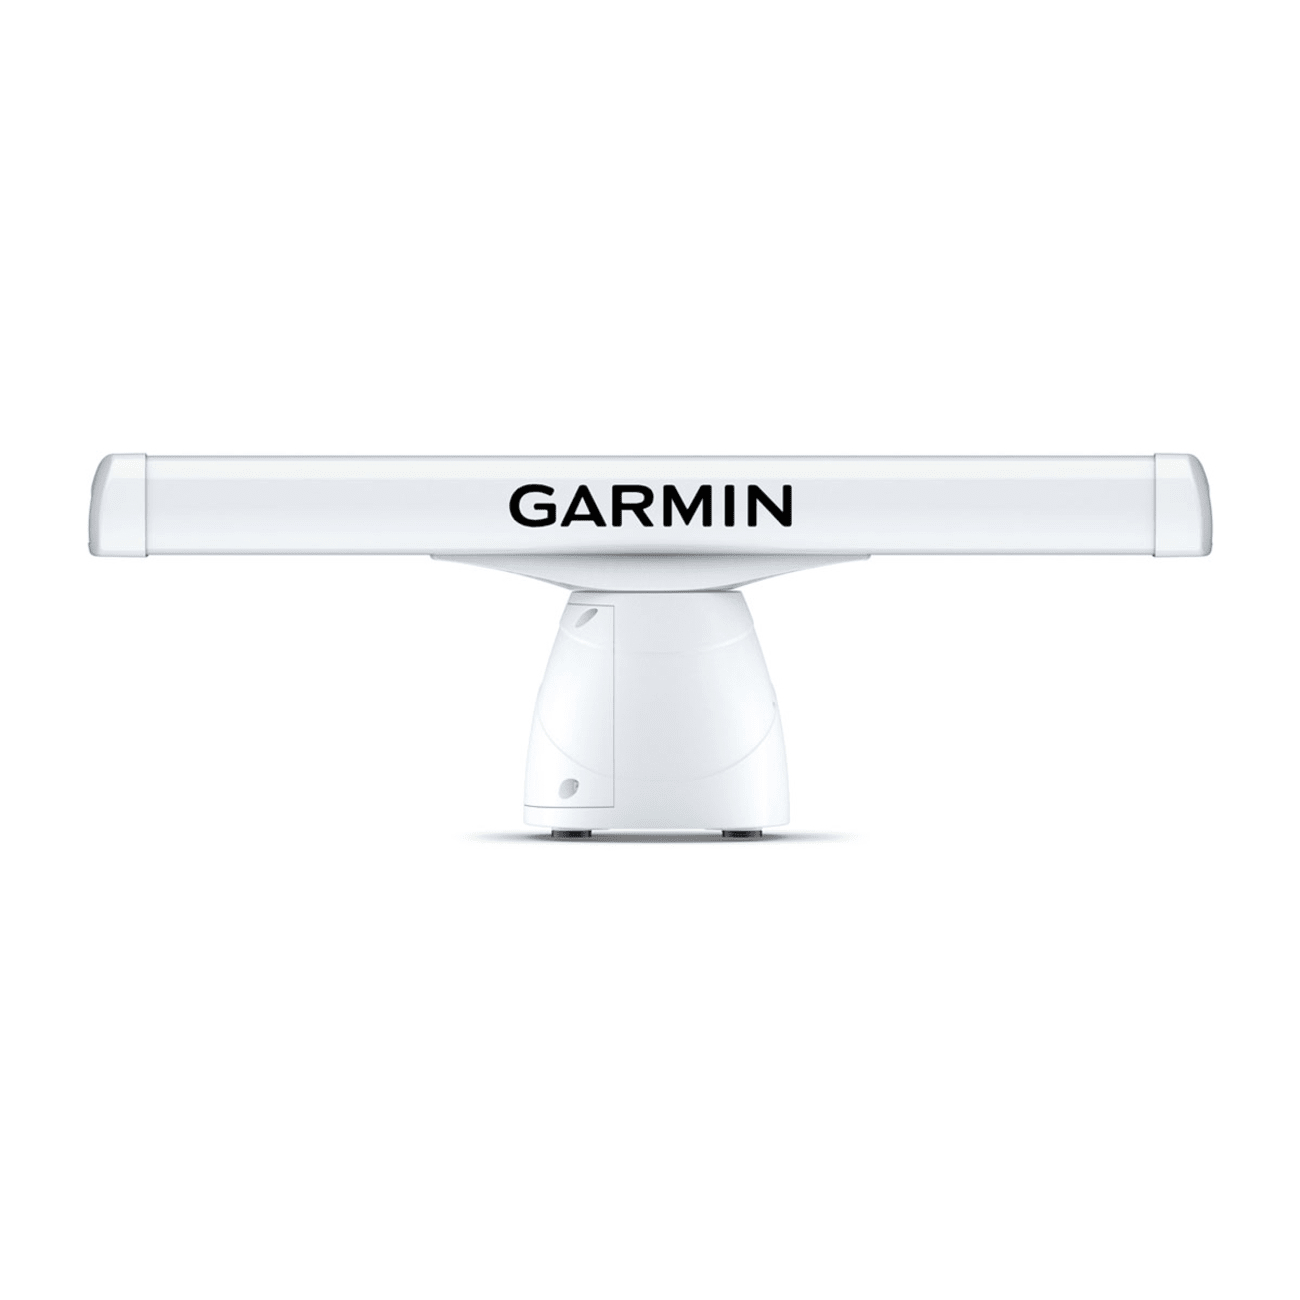 GMR™ 1234/1236 xHD3 - 4' Open Array (Açık Tip) Radar ve Pedestal resmi